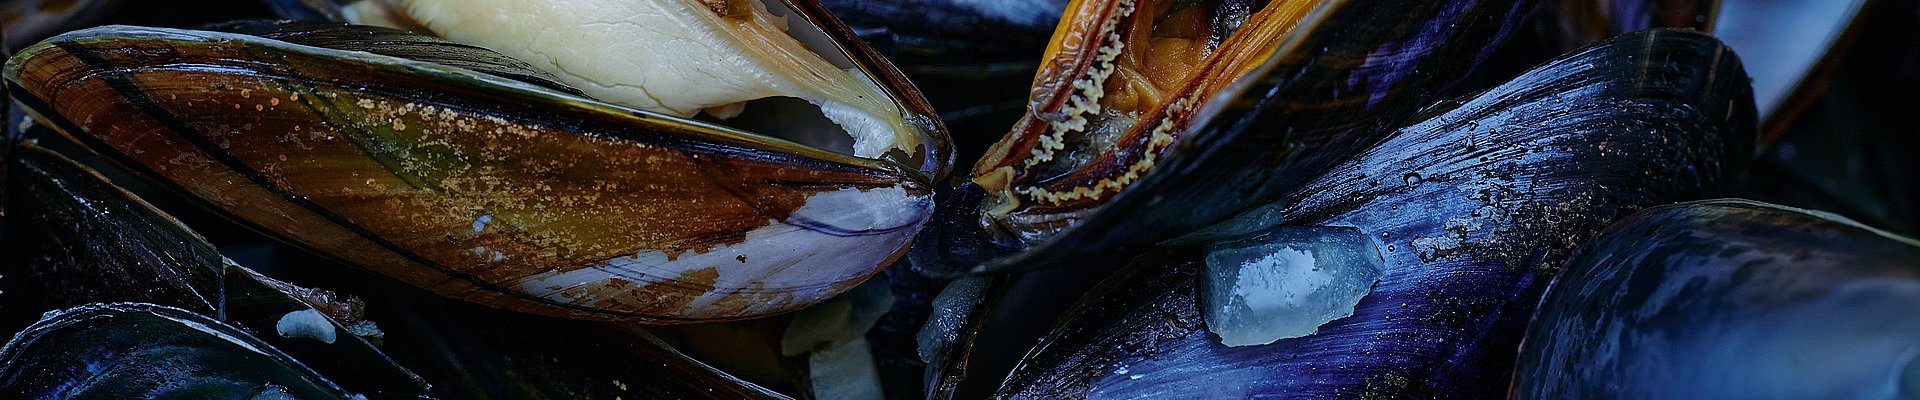 Hos Muslingeriet finder du Limfjordens lækreste muslinger